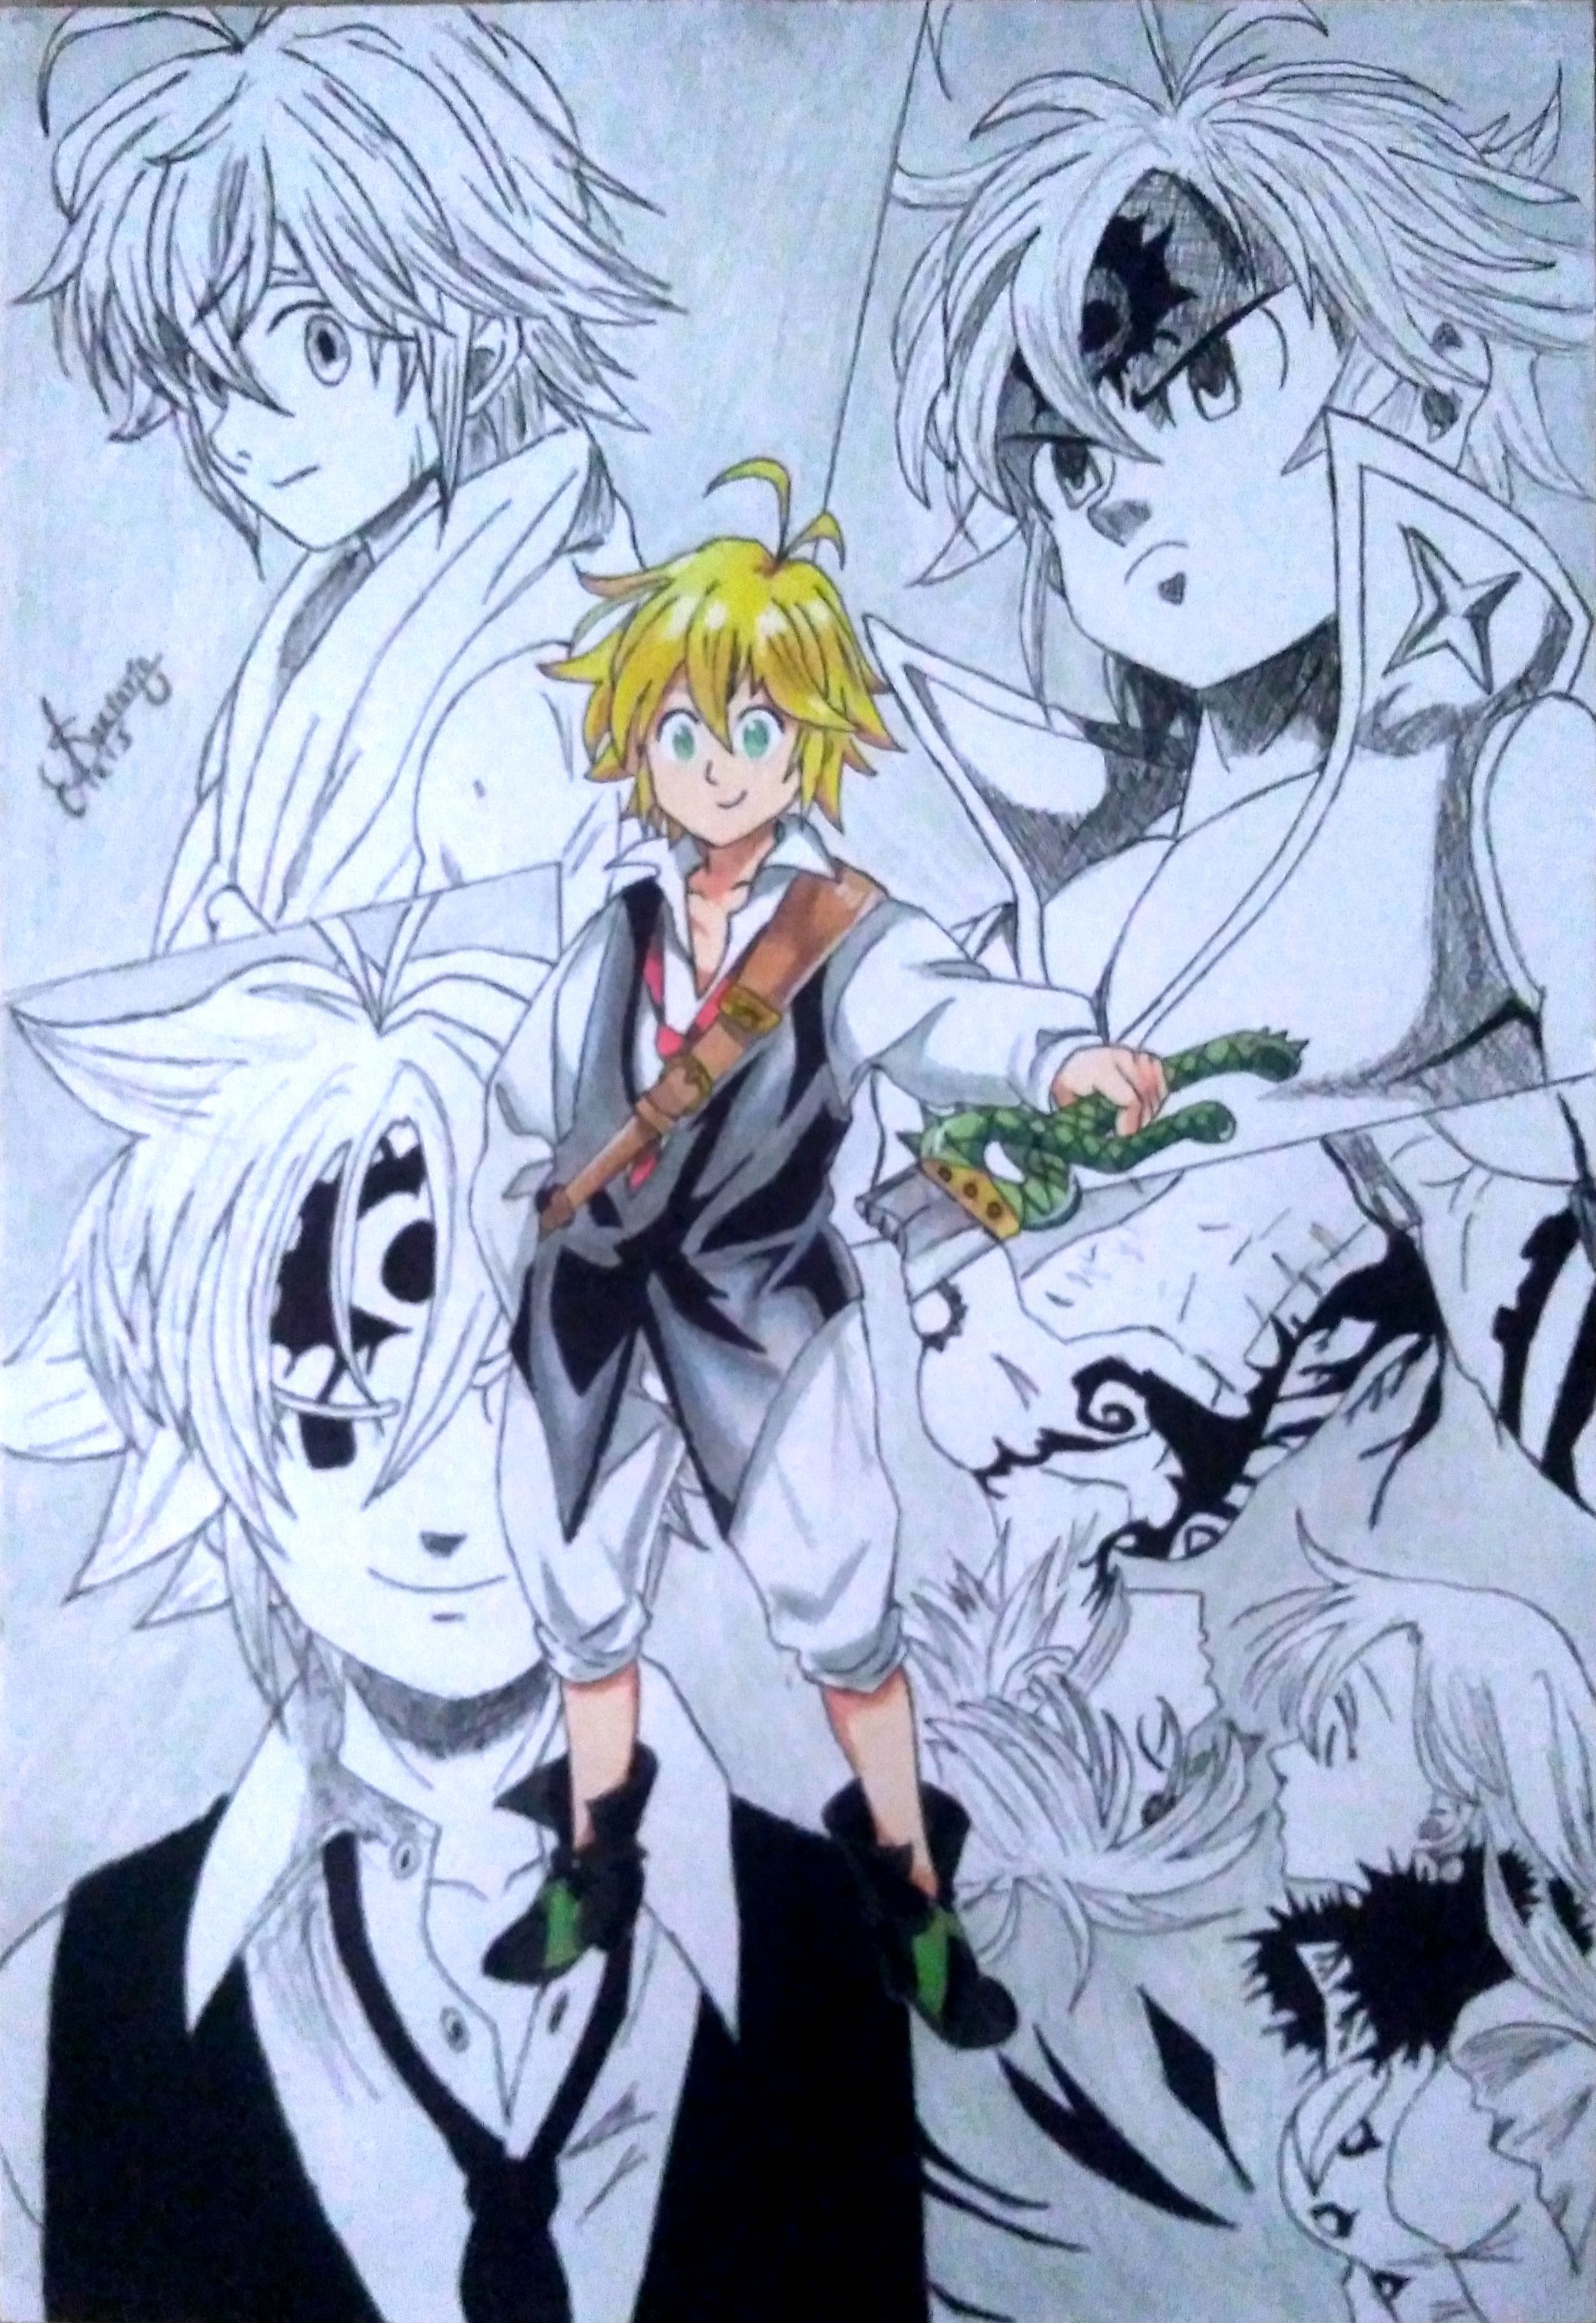 Os 7 Pecados Capitais on X: #animes #anime #NanatsuNoTaizai   / X